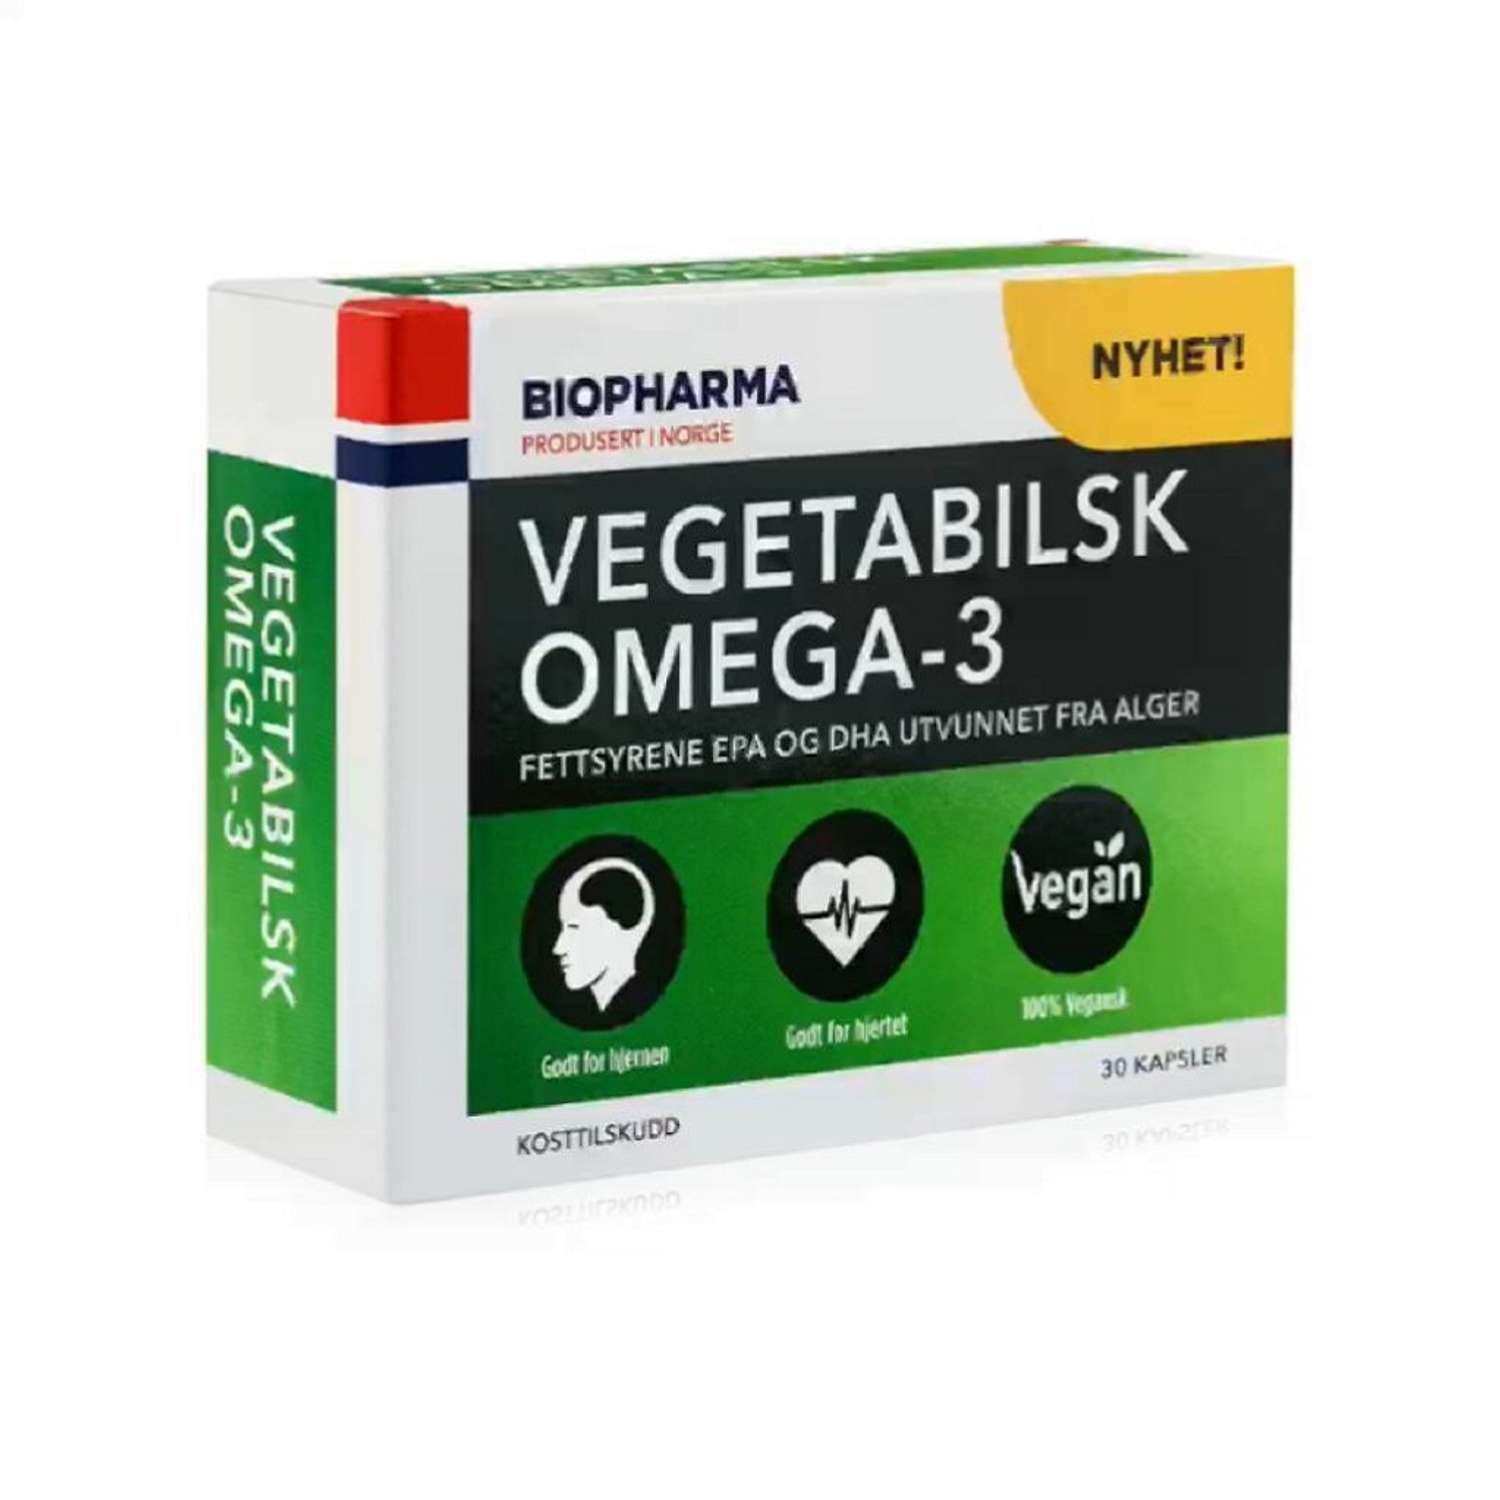 БАДы Biopharma Вегетарианская Омега 3 из водорослей Vegetabilsk Omega 3 - фото 6